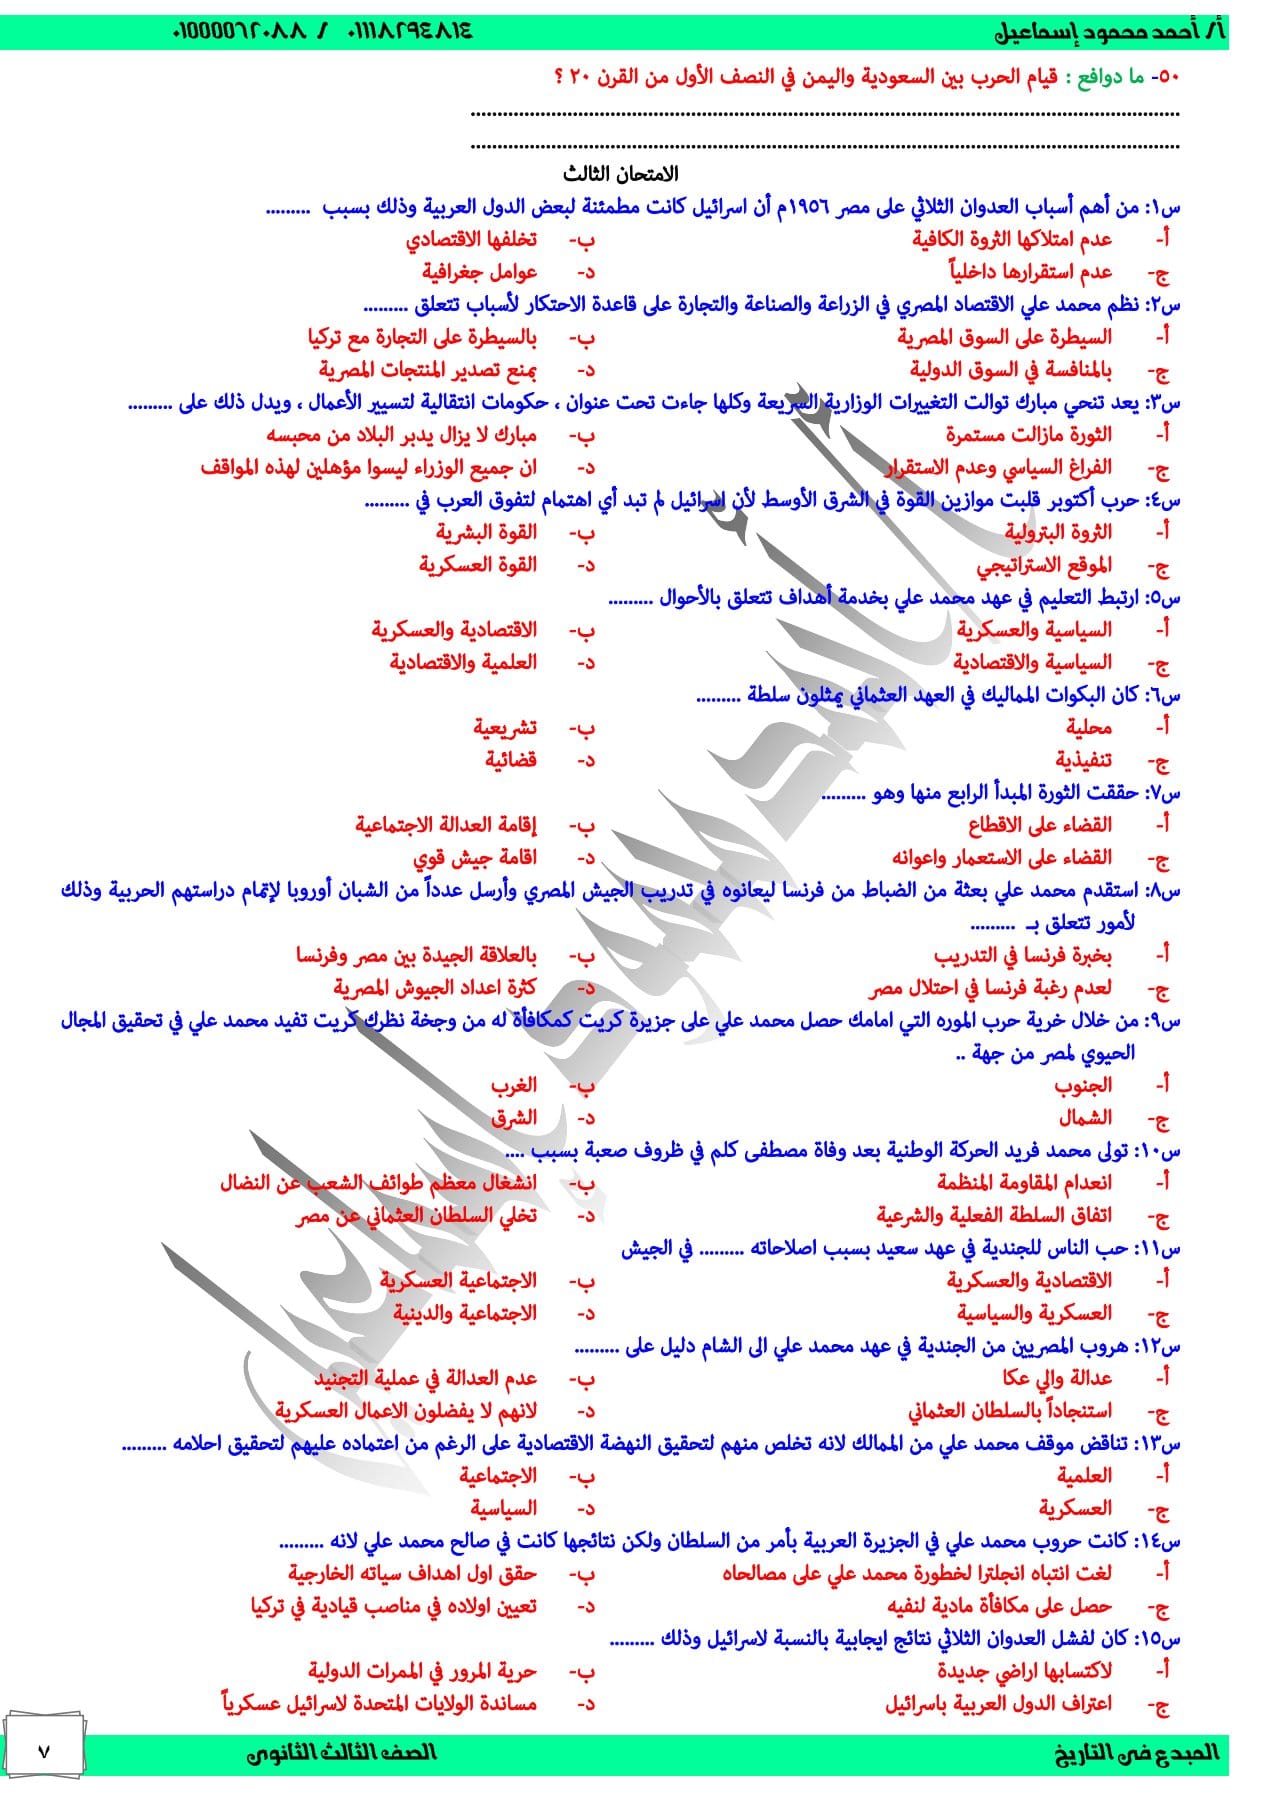 مدرس اول ثلاث امتحانات تاريخ بالإجابات للصف الثالث الثانوى أ/أحمد محمود إسماعيل	